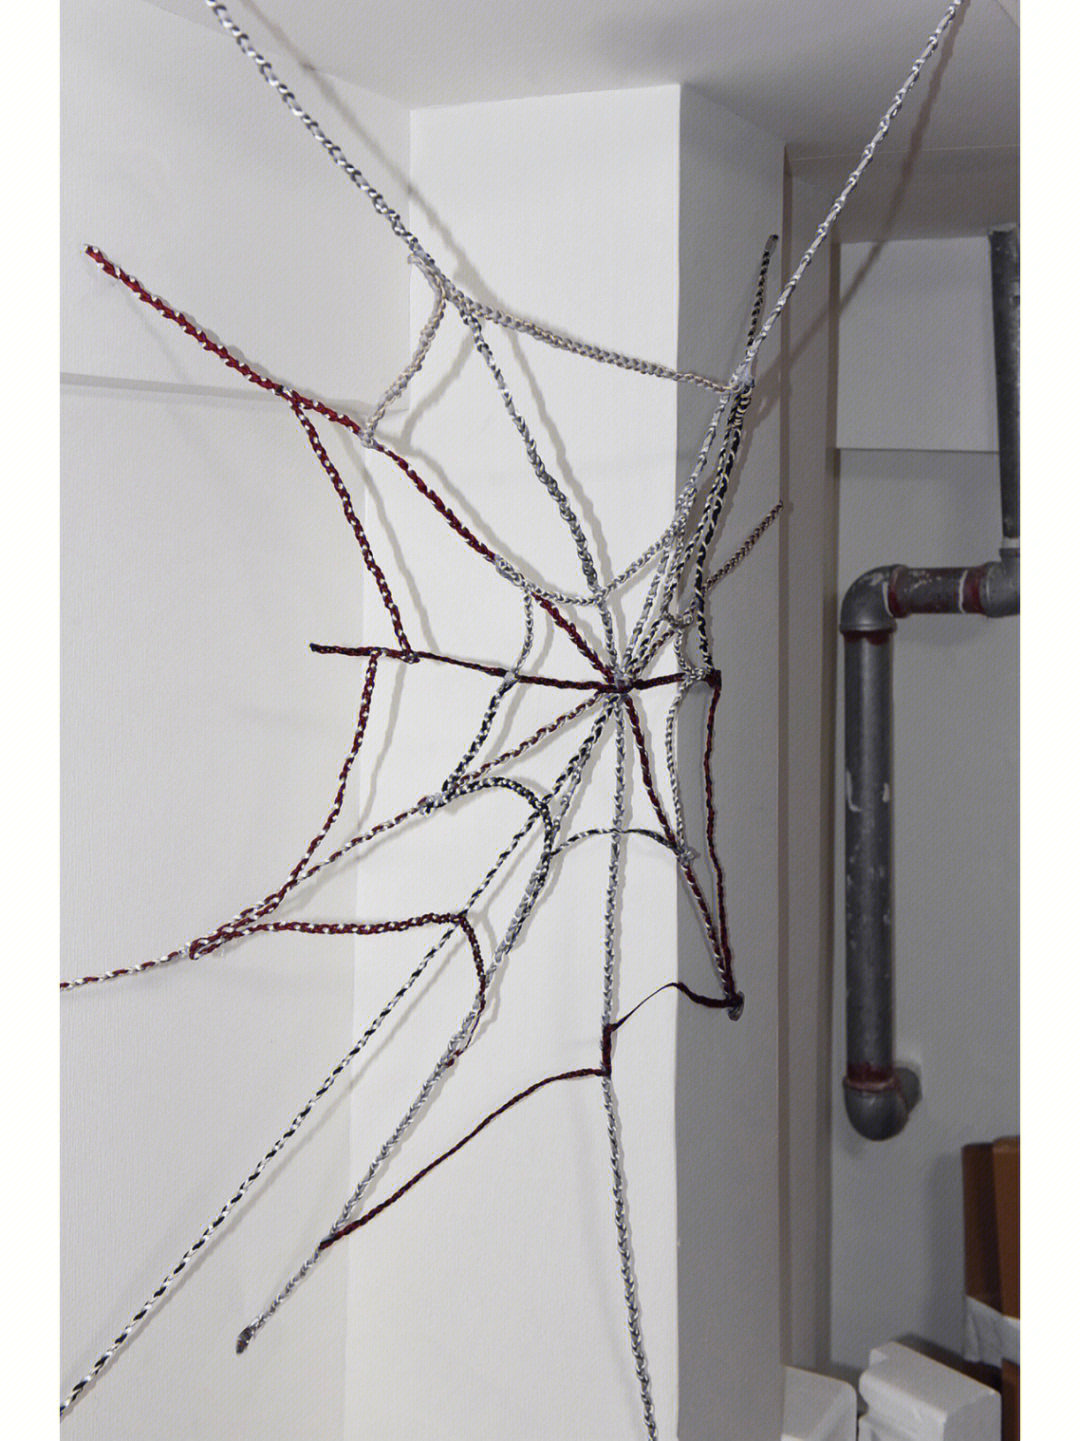 蜘蛛网绳子编法图片